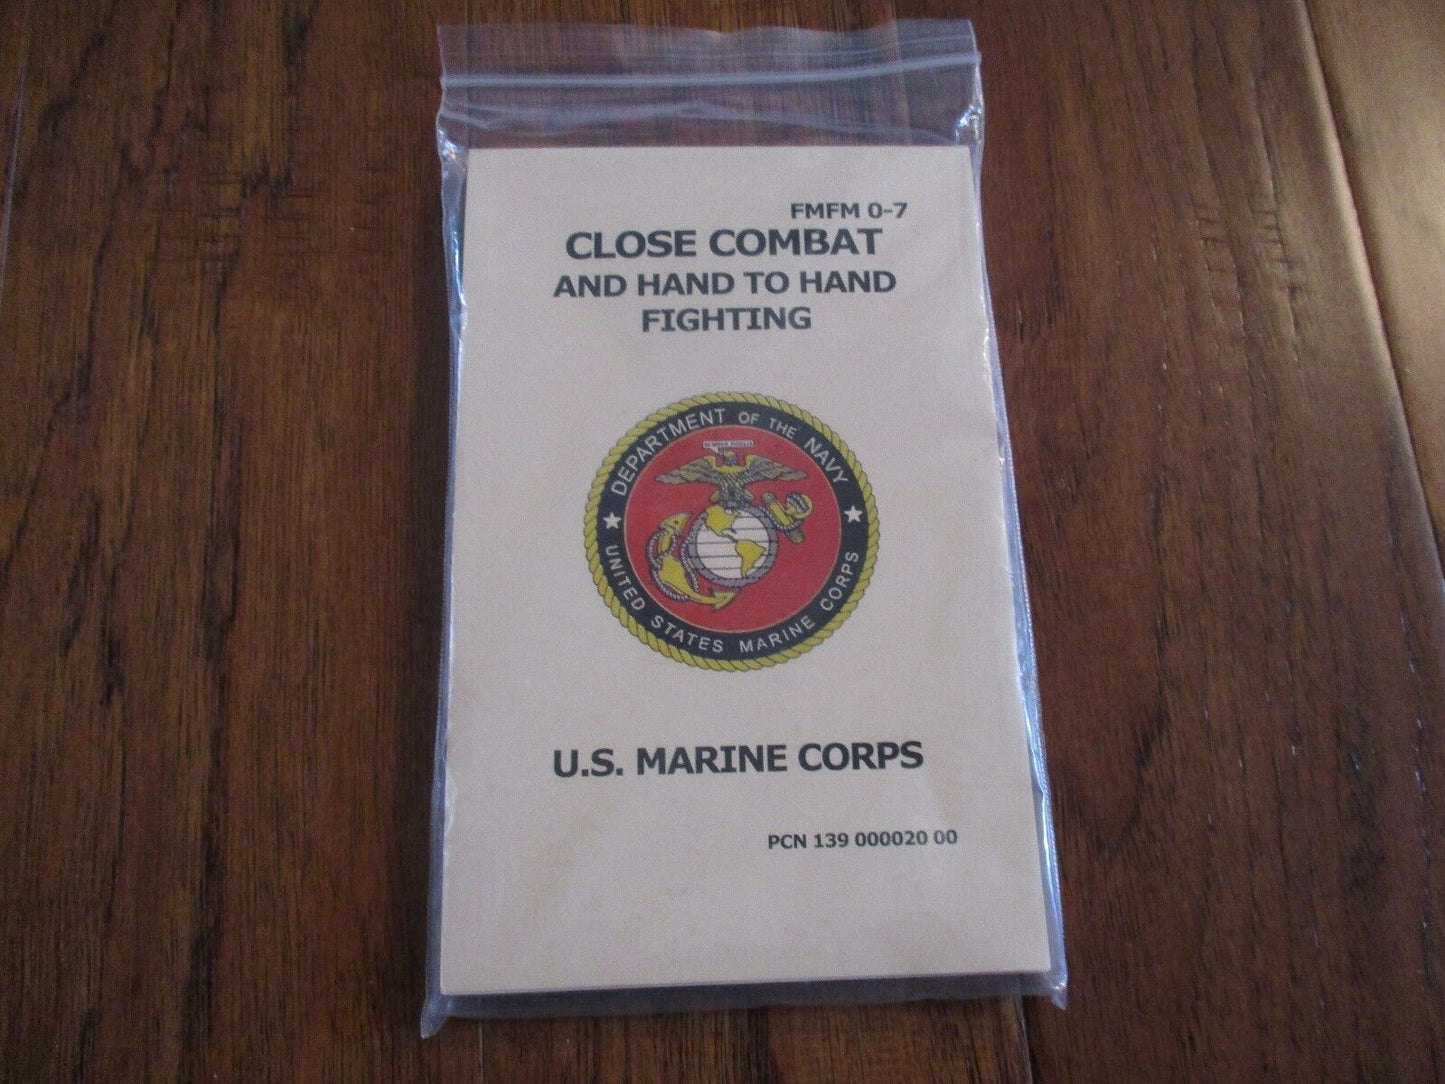 U.S MARINE CORPS MILITARY HAND TO HAND FIGHTING CLOSE COMBAT HANDBOOK FMFM - 07